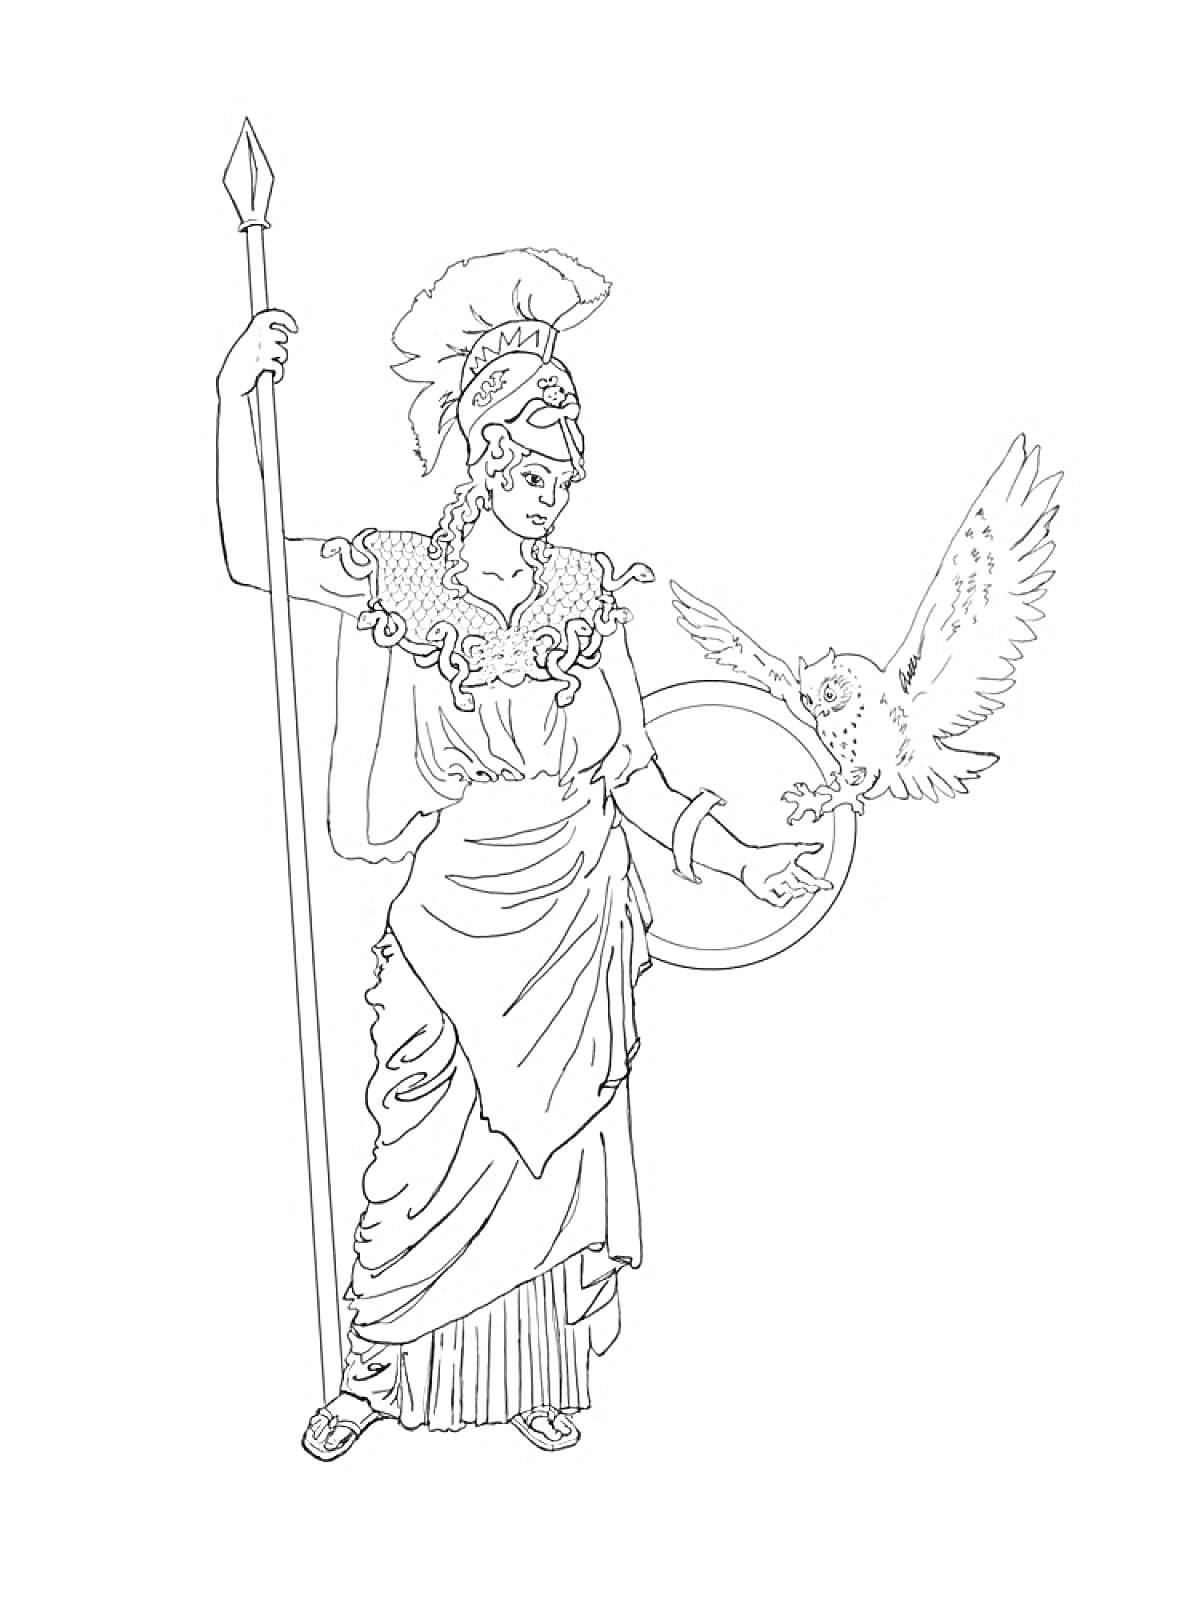 Богиня с шлемом, копьем и совой на руке, в классическом греческом одеянии